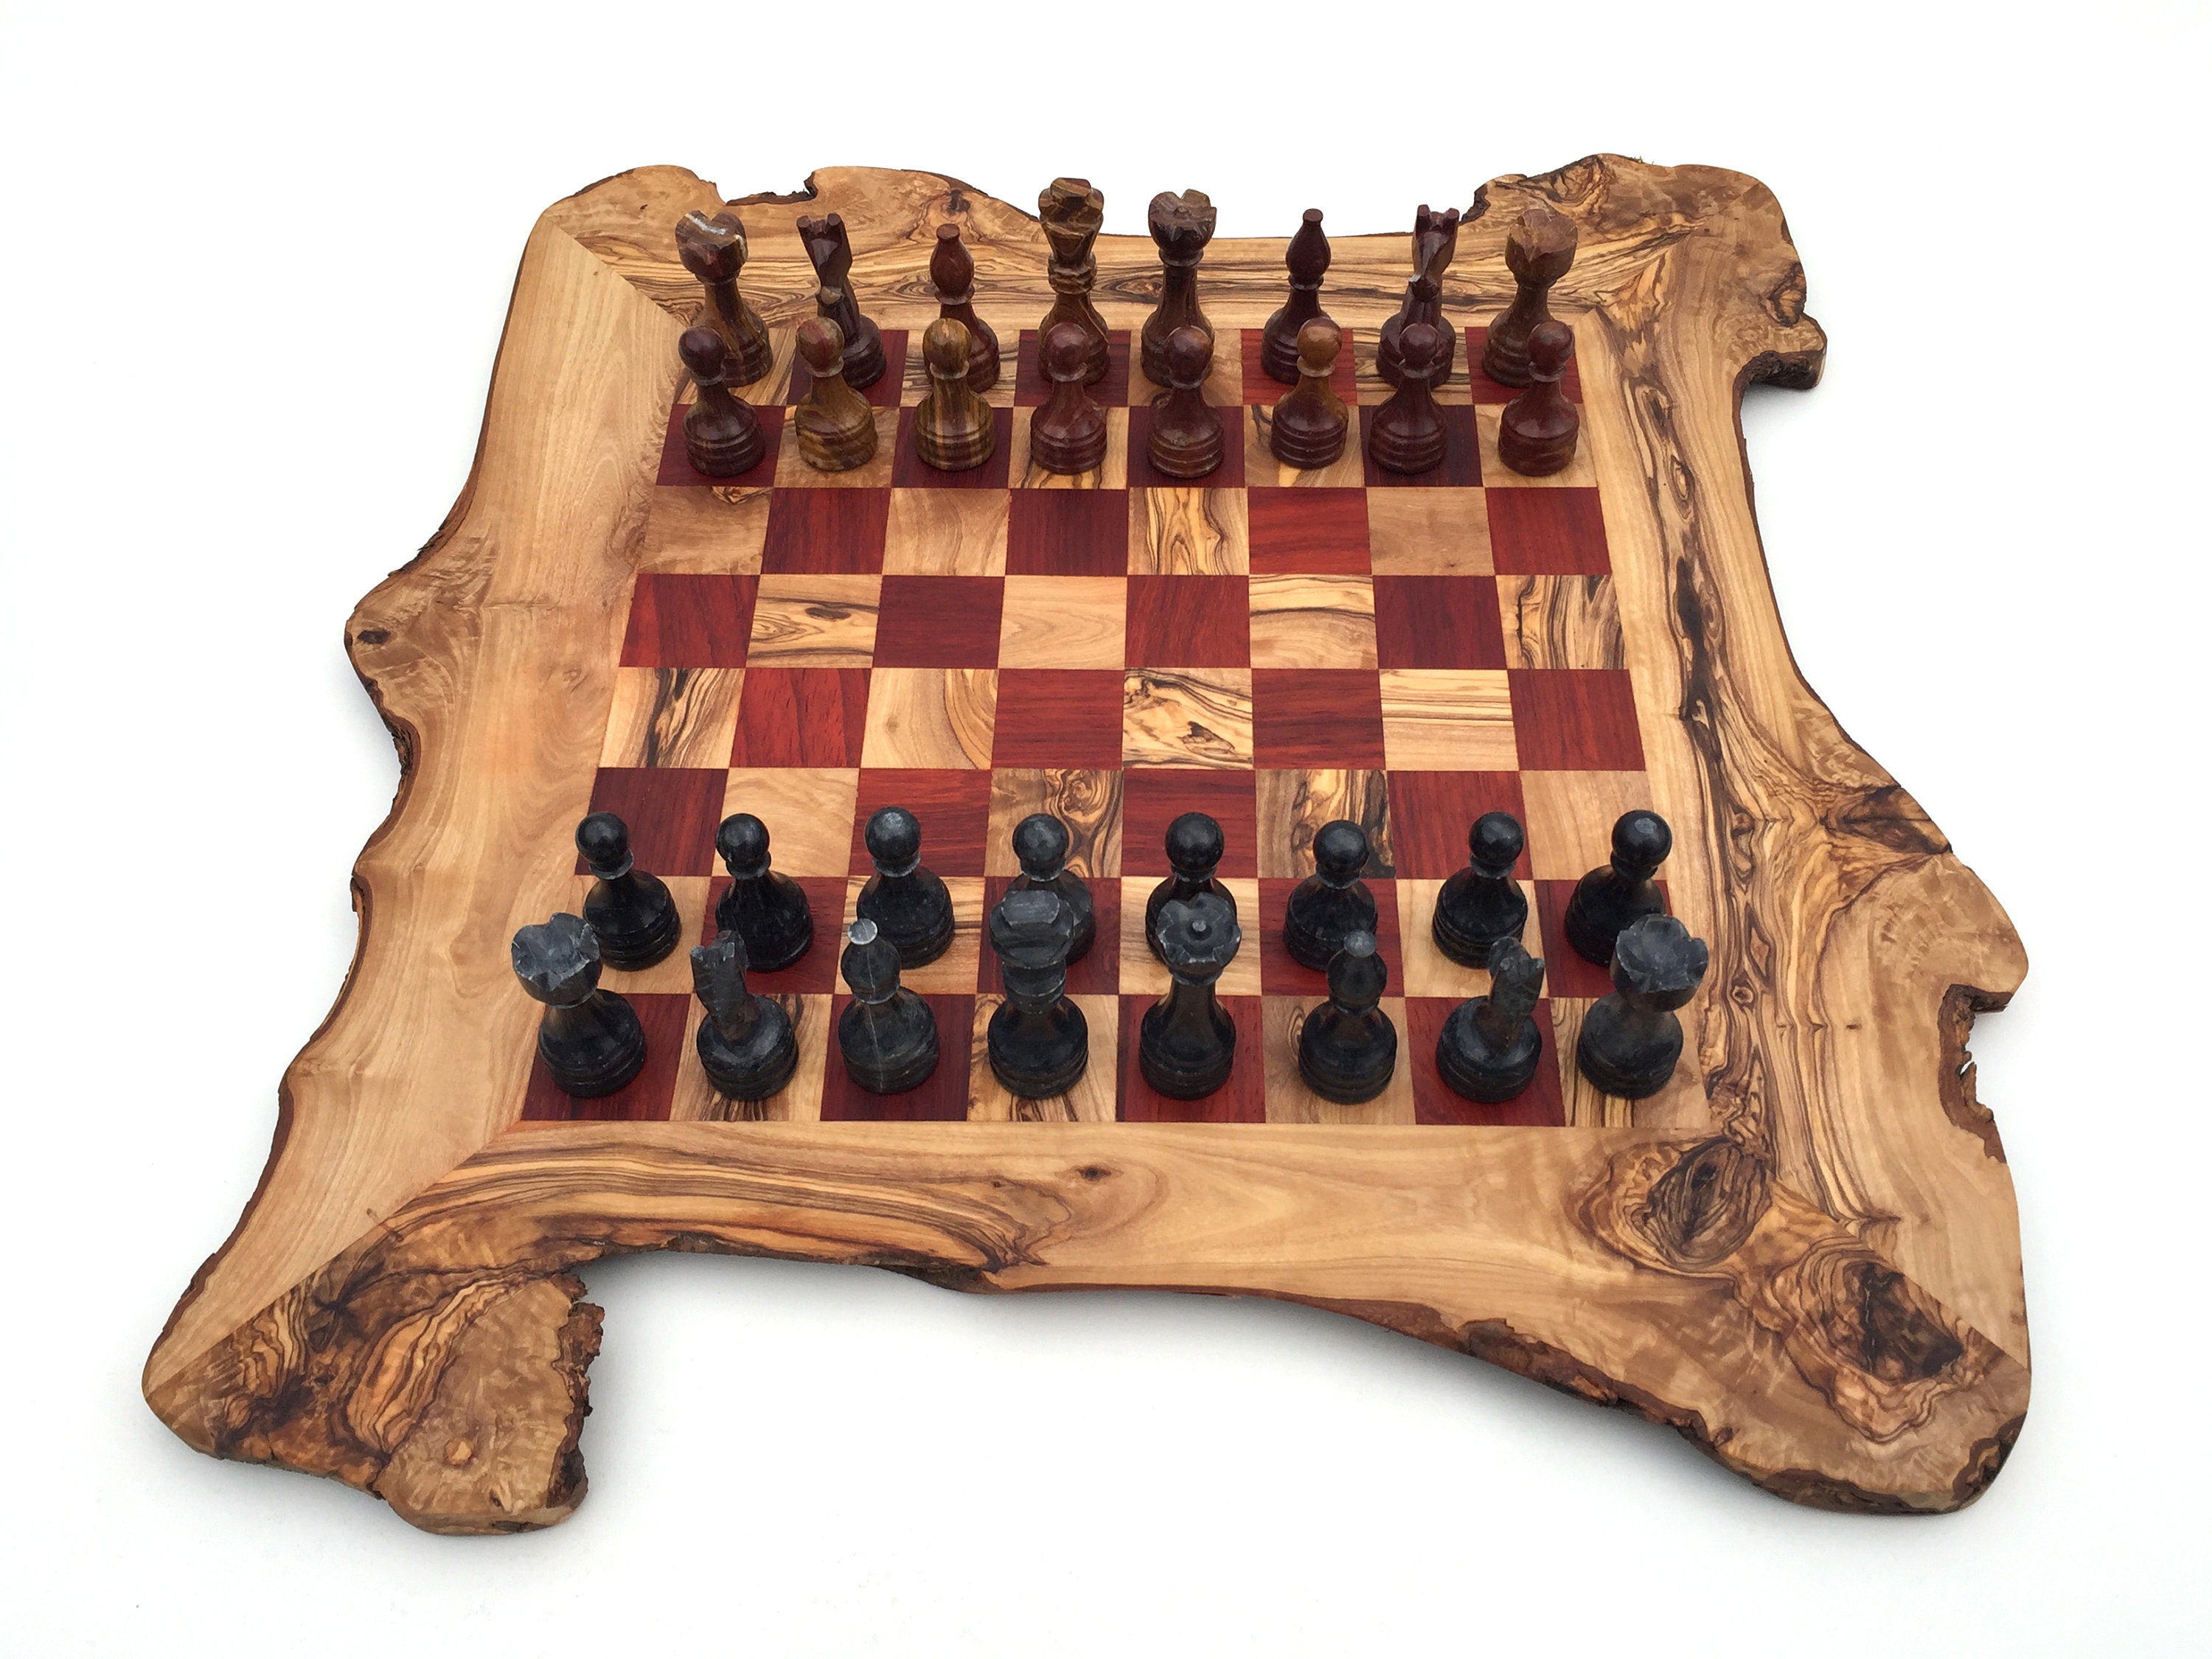 Cómo elegir el tamaño adecuado de tu tablero de ajedrez